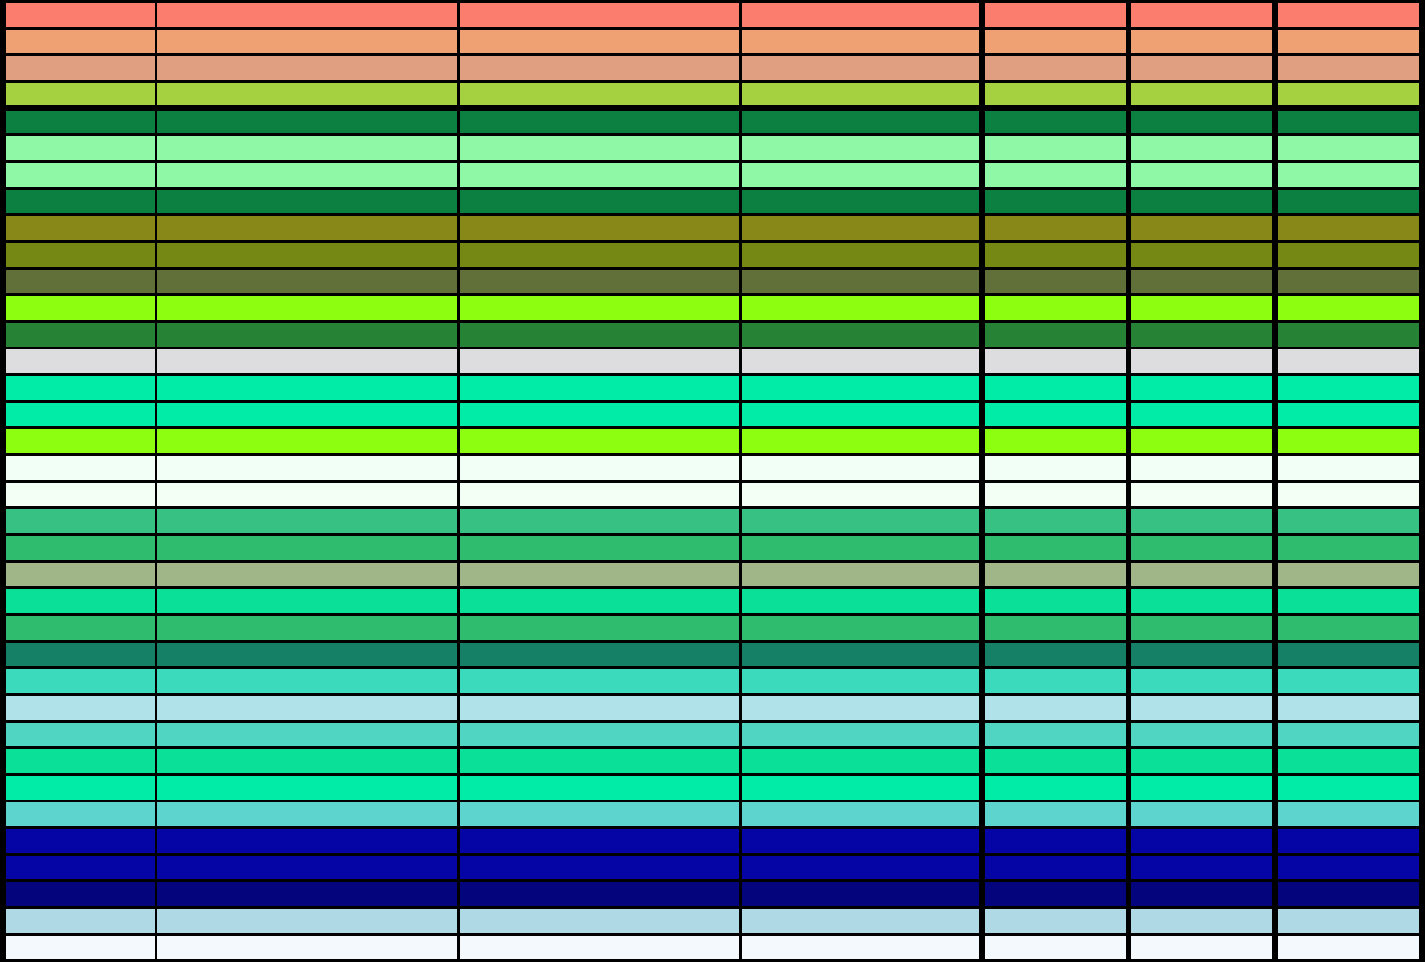 True Color Chart